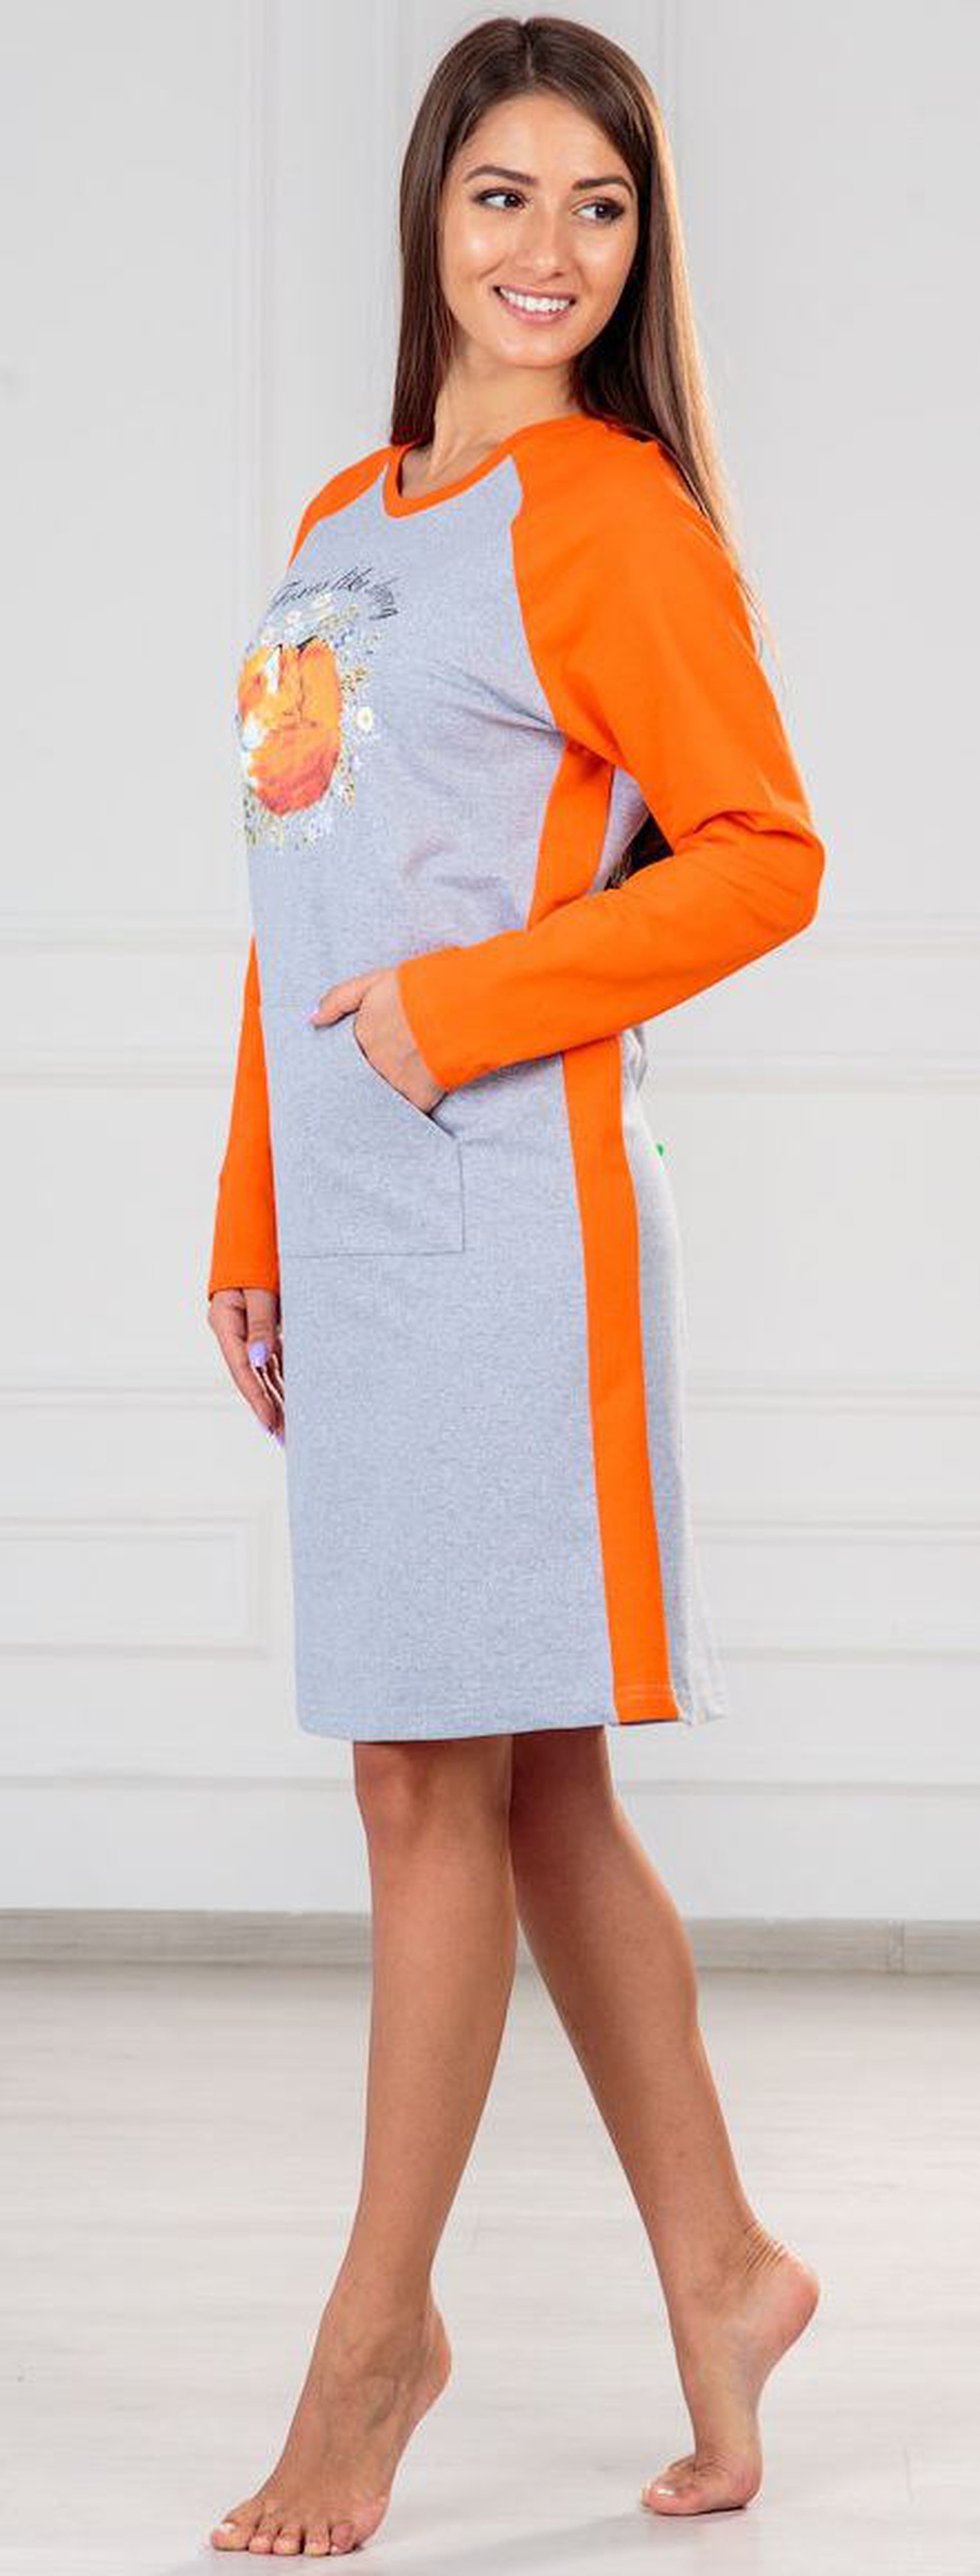 Платье ModaRU Лиса (54) оранжевый/серый меланж фото